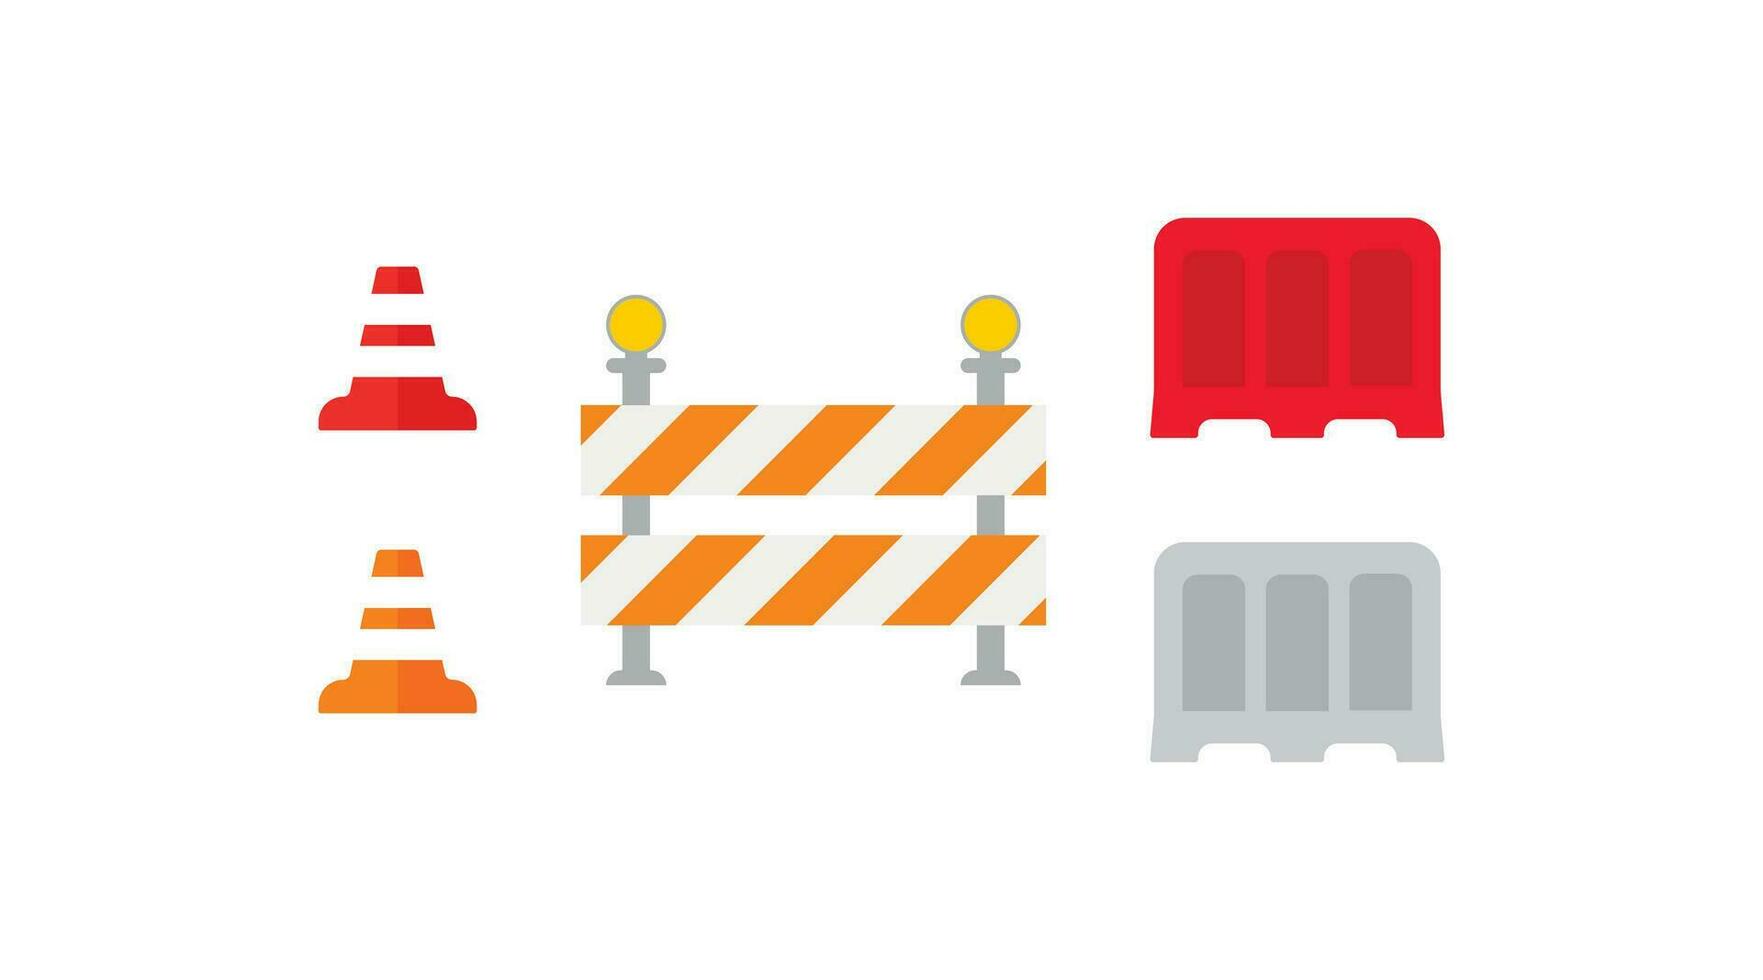 väg barriär ikon uppsättning. trafik avspärrning illustration symbol. väg restriktion tecken vektor